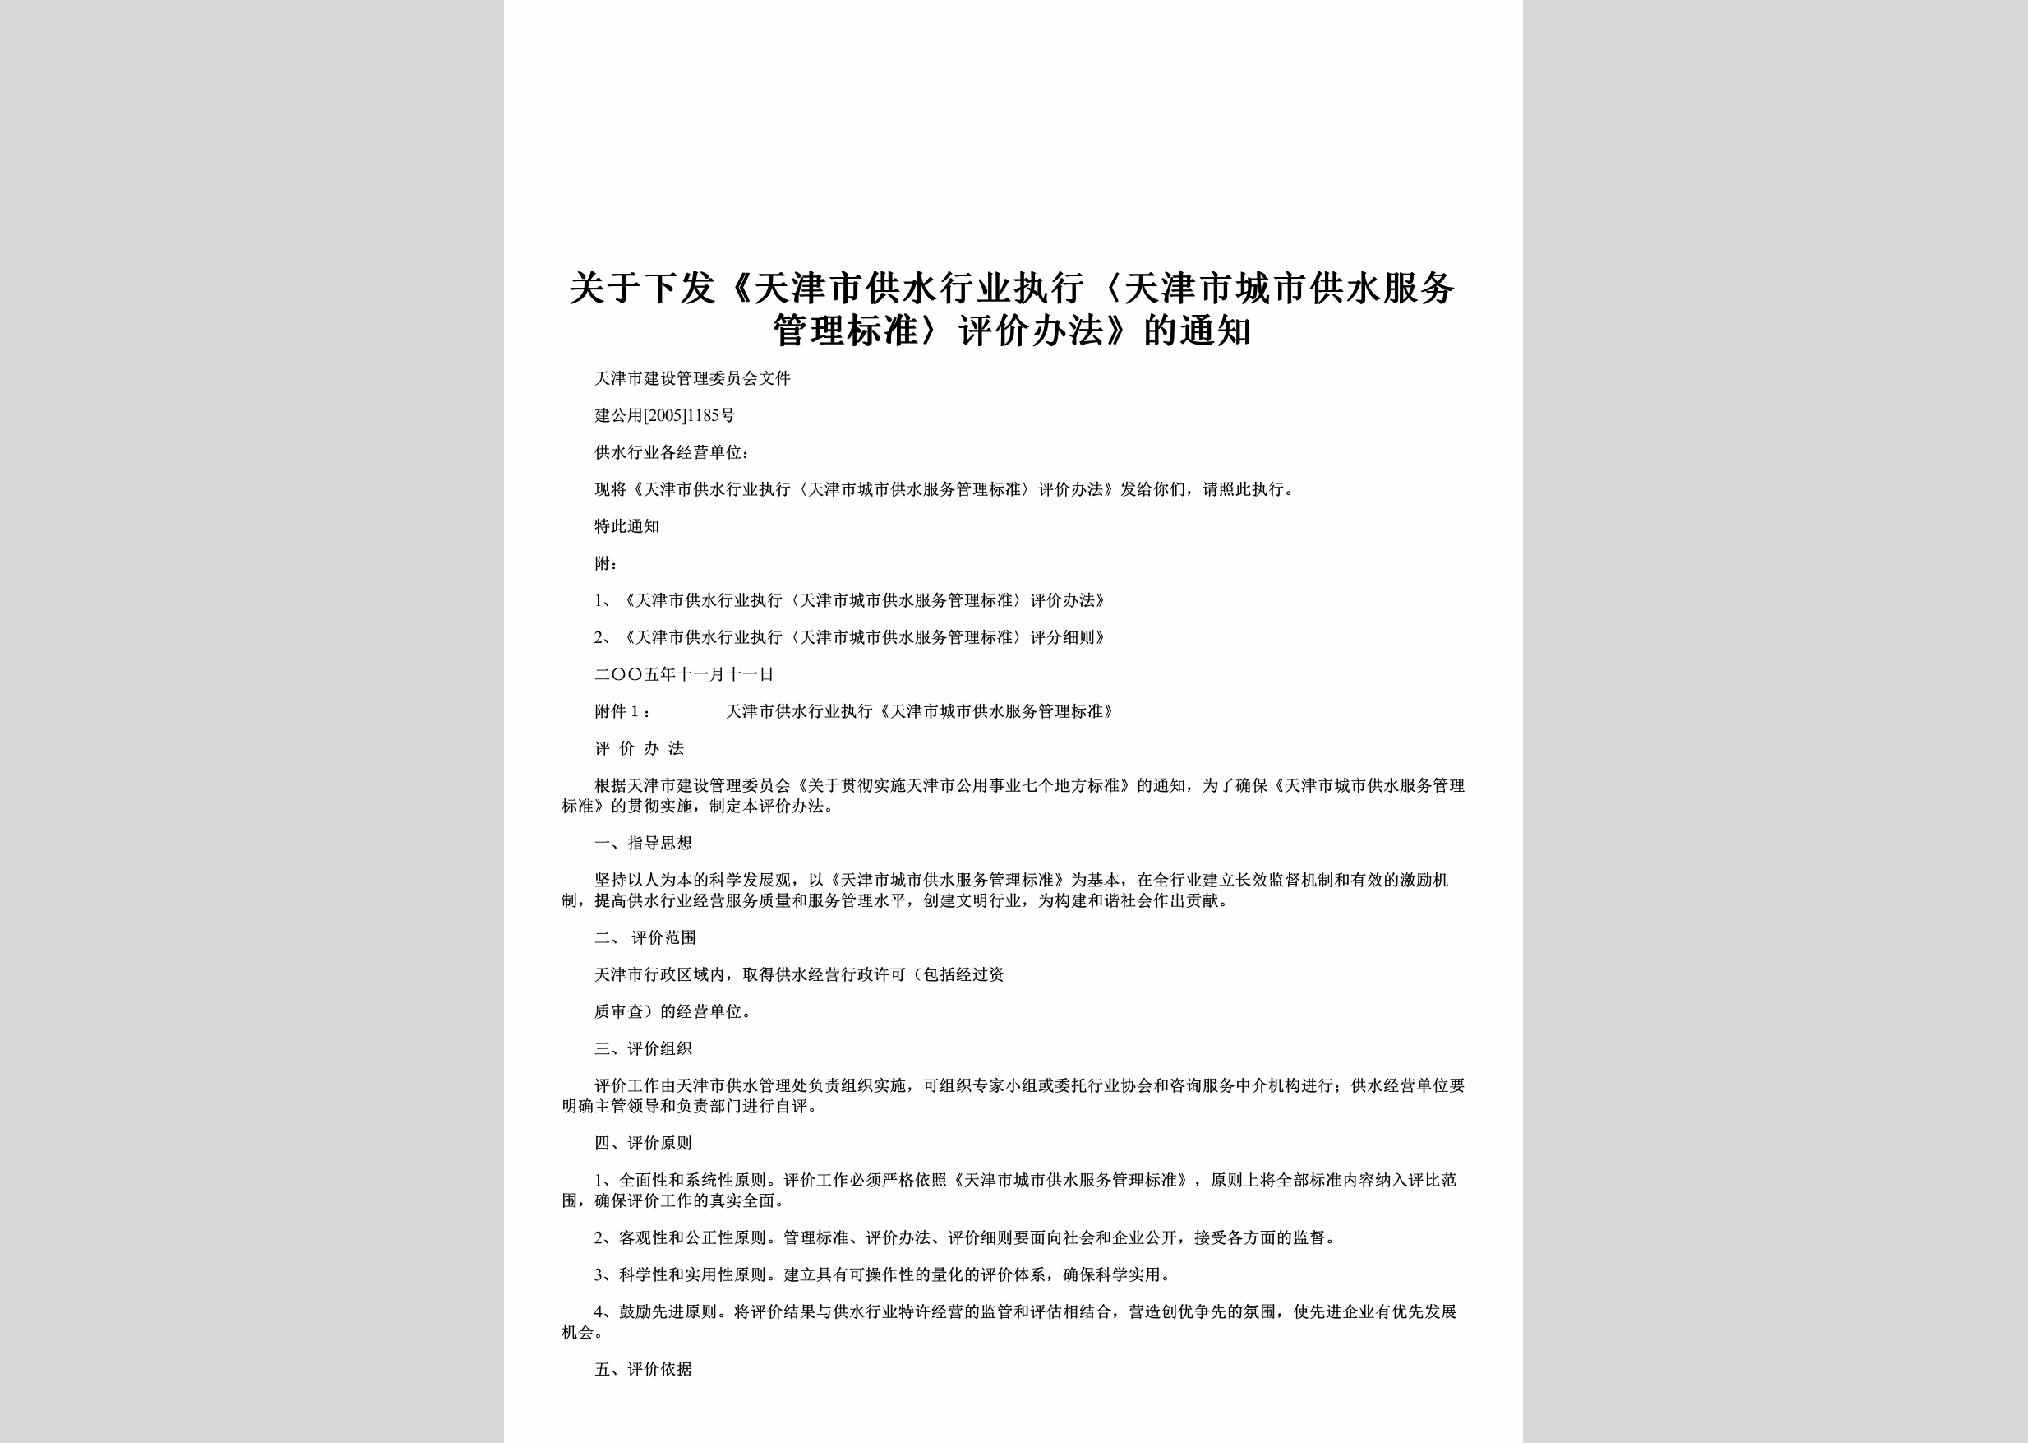 建公用[2005]1185号：关于下发《天津市供水行业执行〈天津市城市供水服务管理标准〉评价办法》的通知